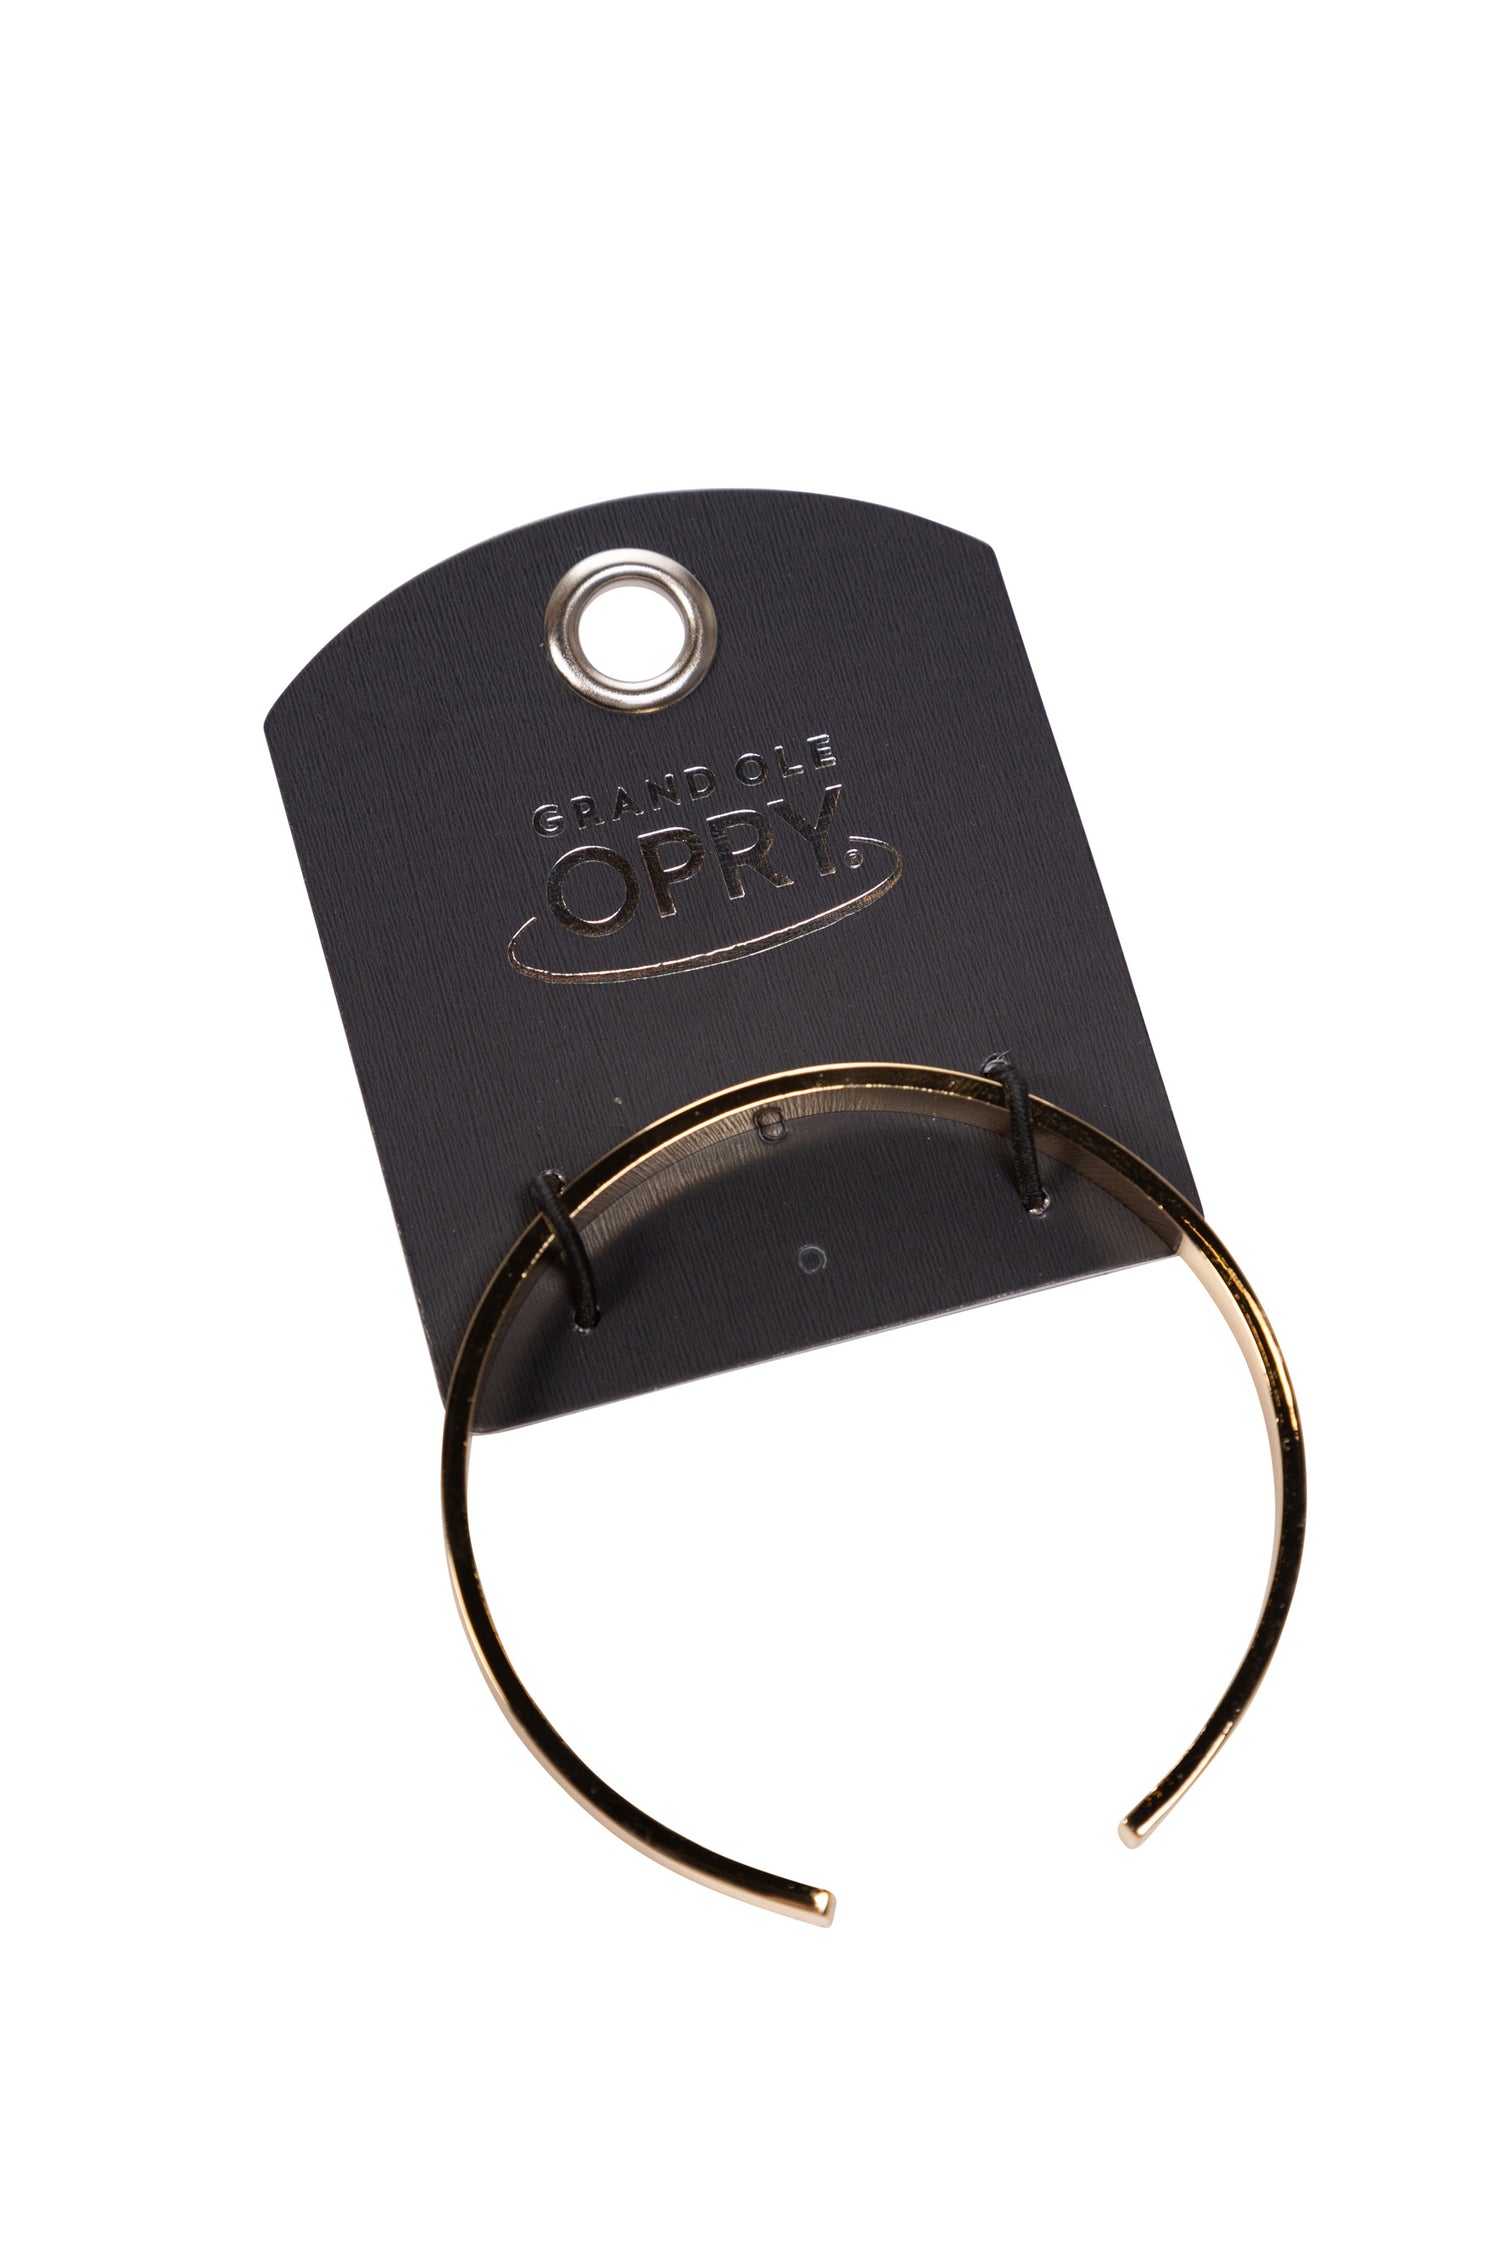 Opry Music Speaks Gold Cuff Bracelet